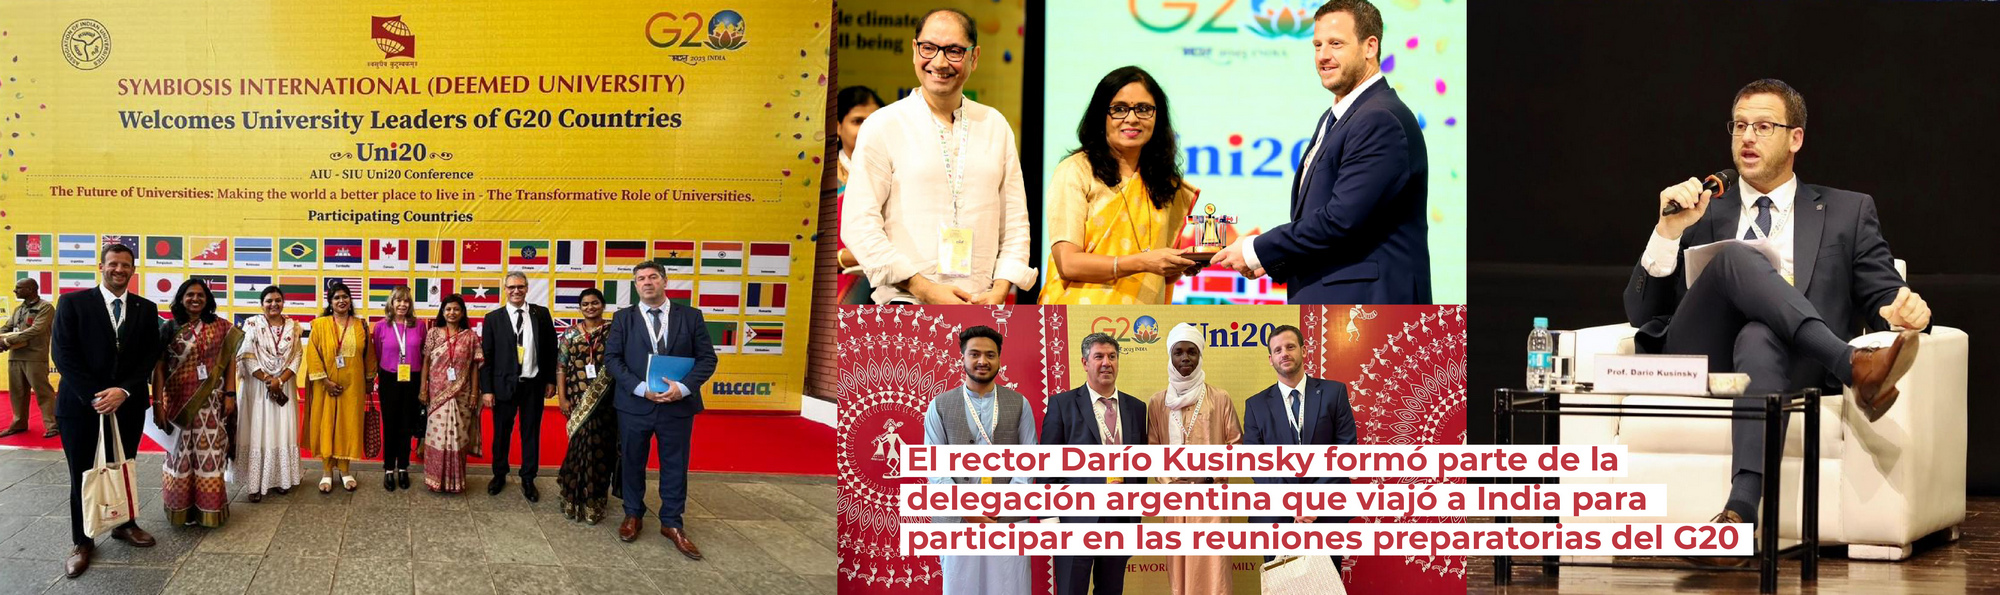 El rector Darío Kusinsky formó parte de la delegación argentina que viajó a India para participar en las reuniones preparatorias del G20 